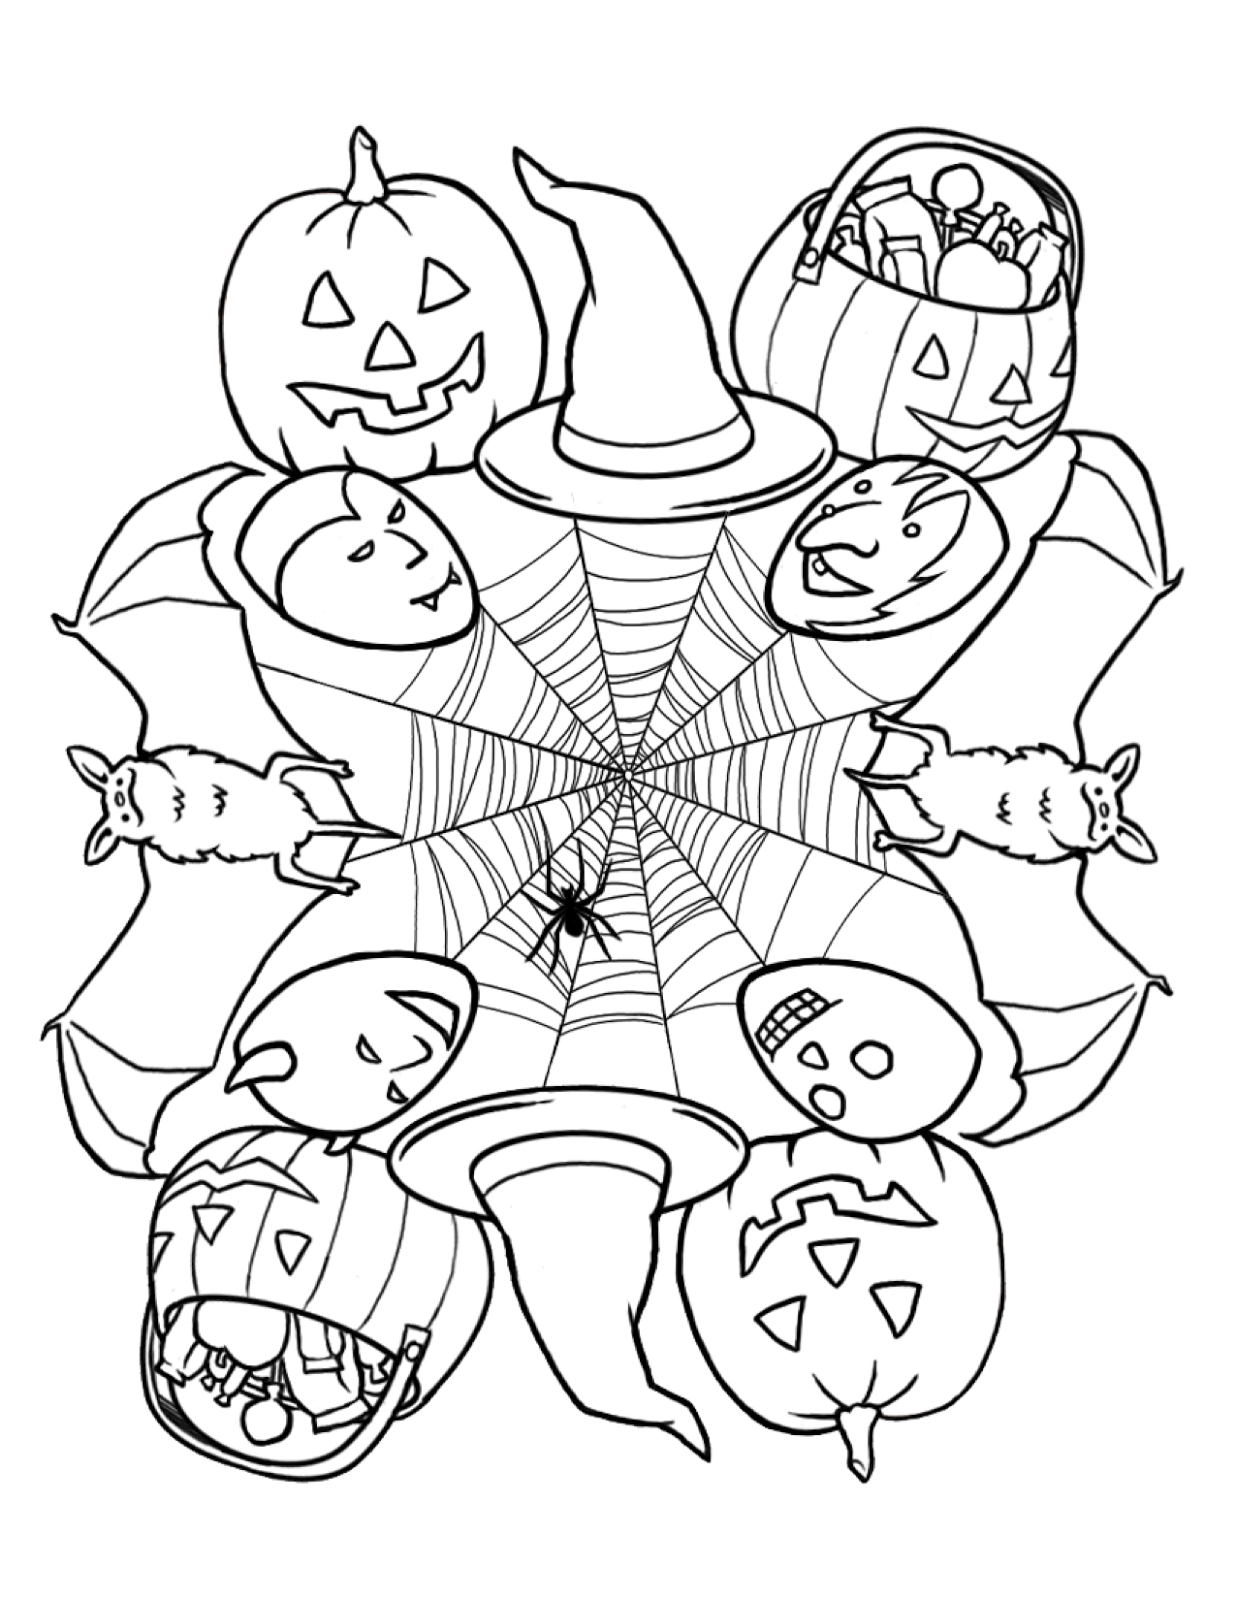 Colorindo o Halloween: Desenhos Assustadores para sua Diversão!